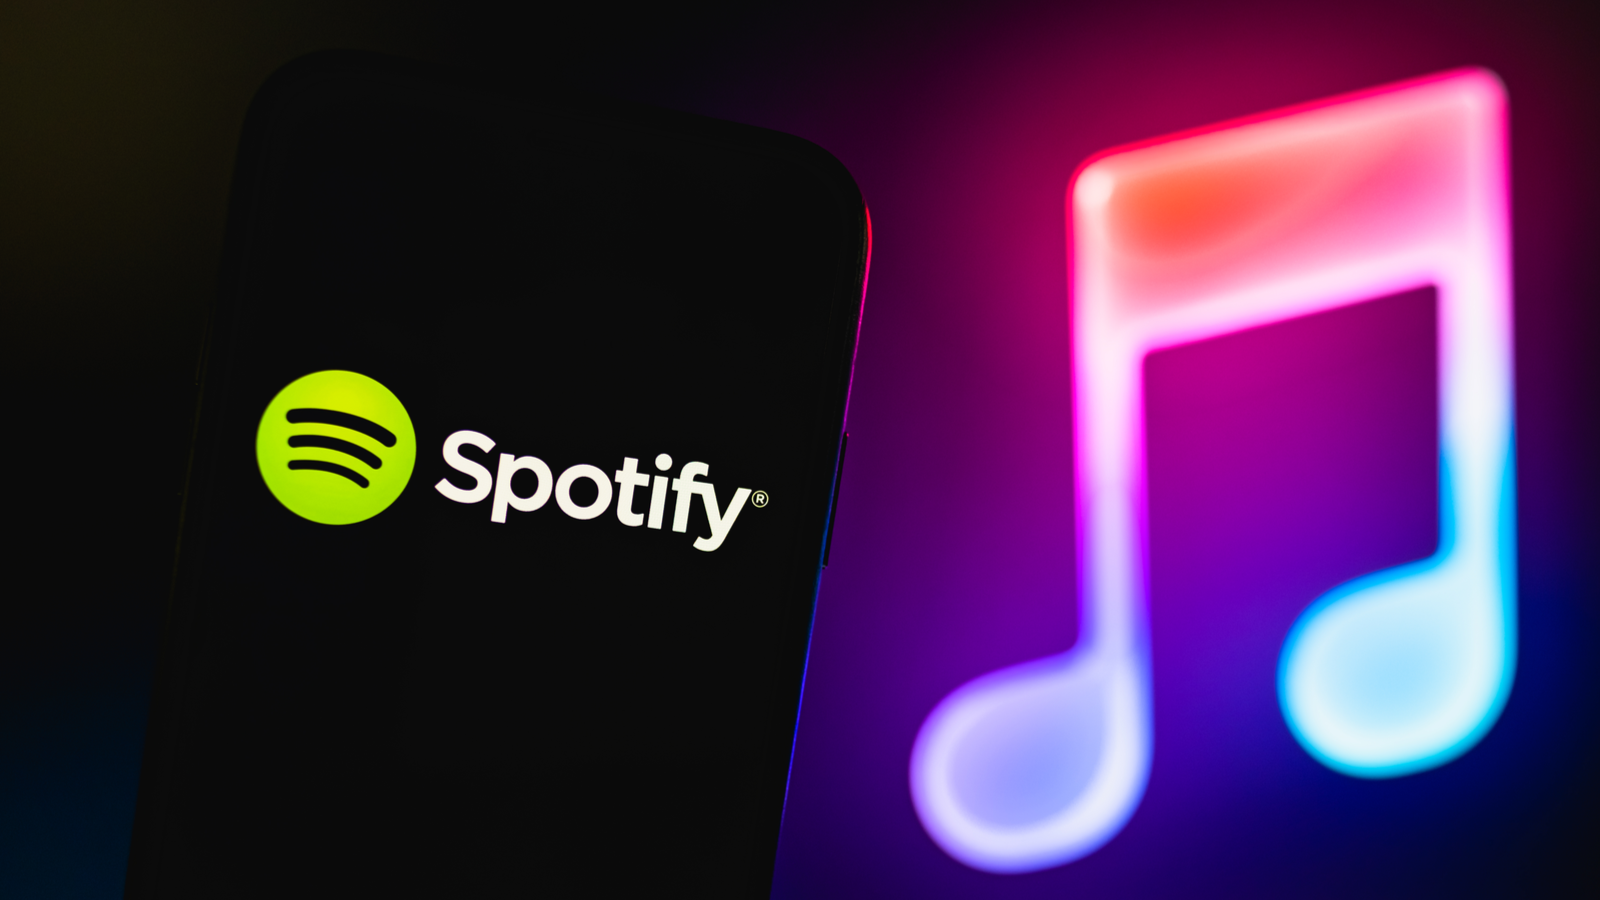 Logo Spotify phía trước màn hình neon với hai nốt nhạc